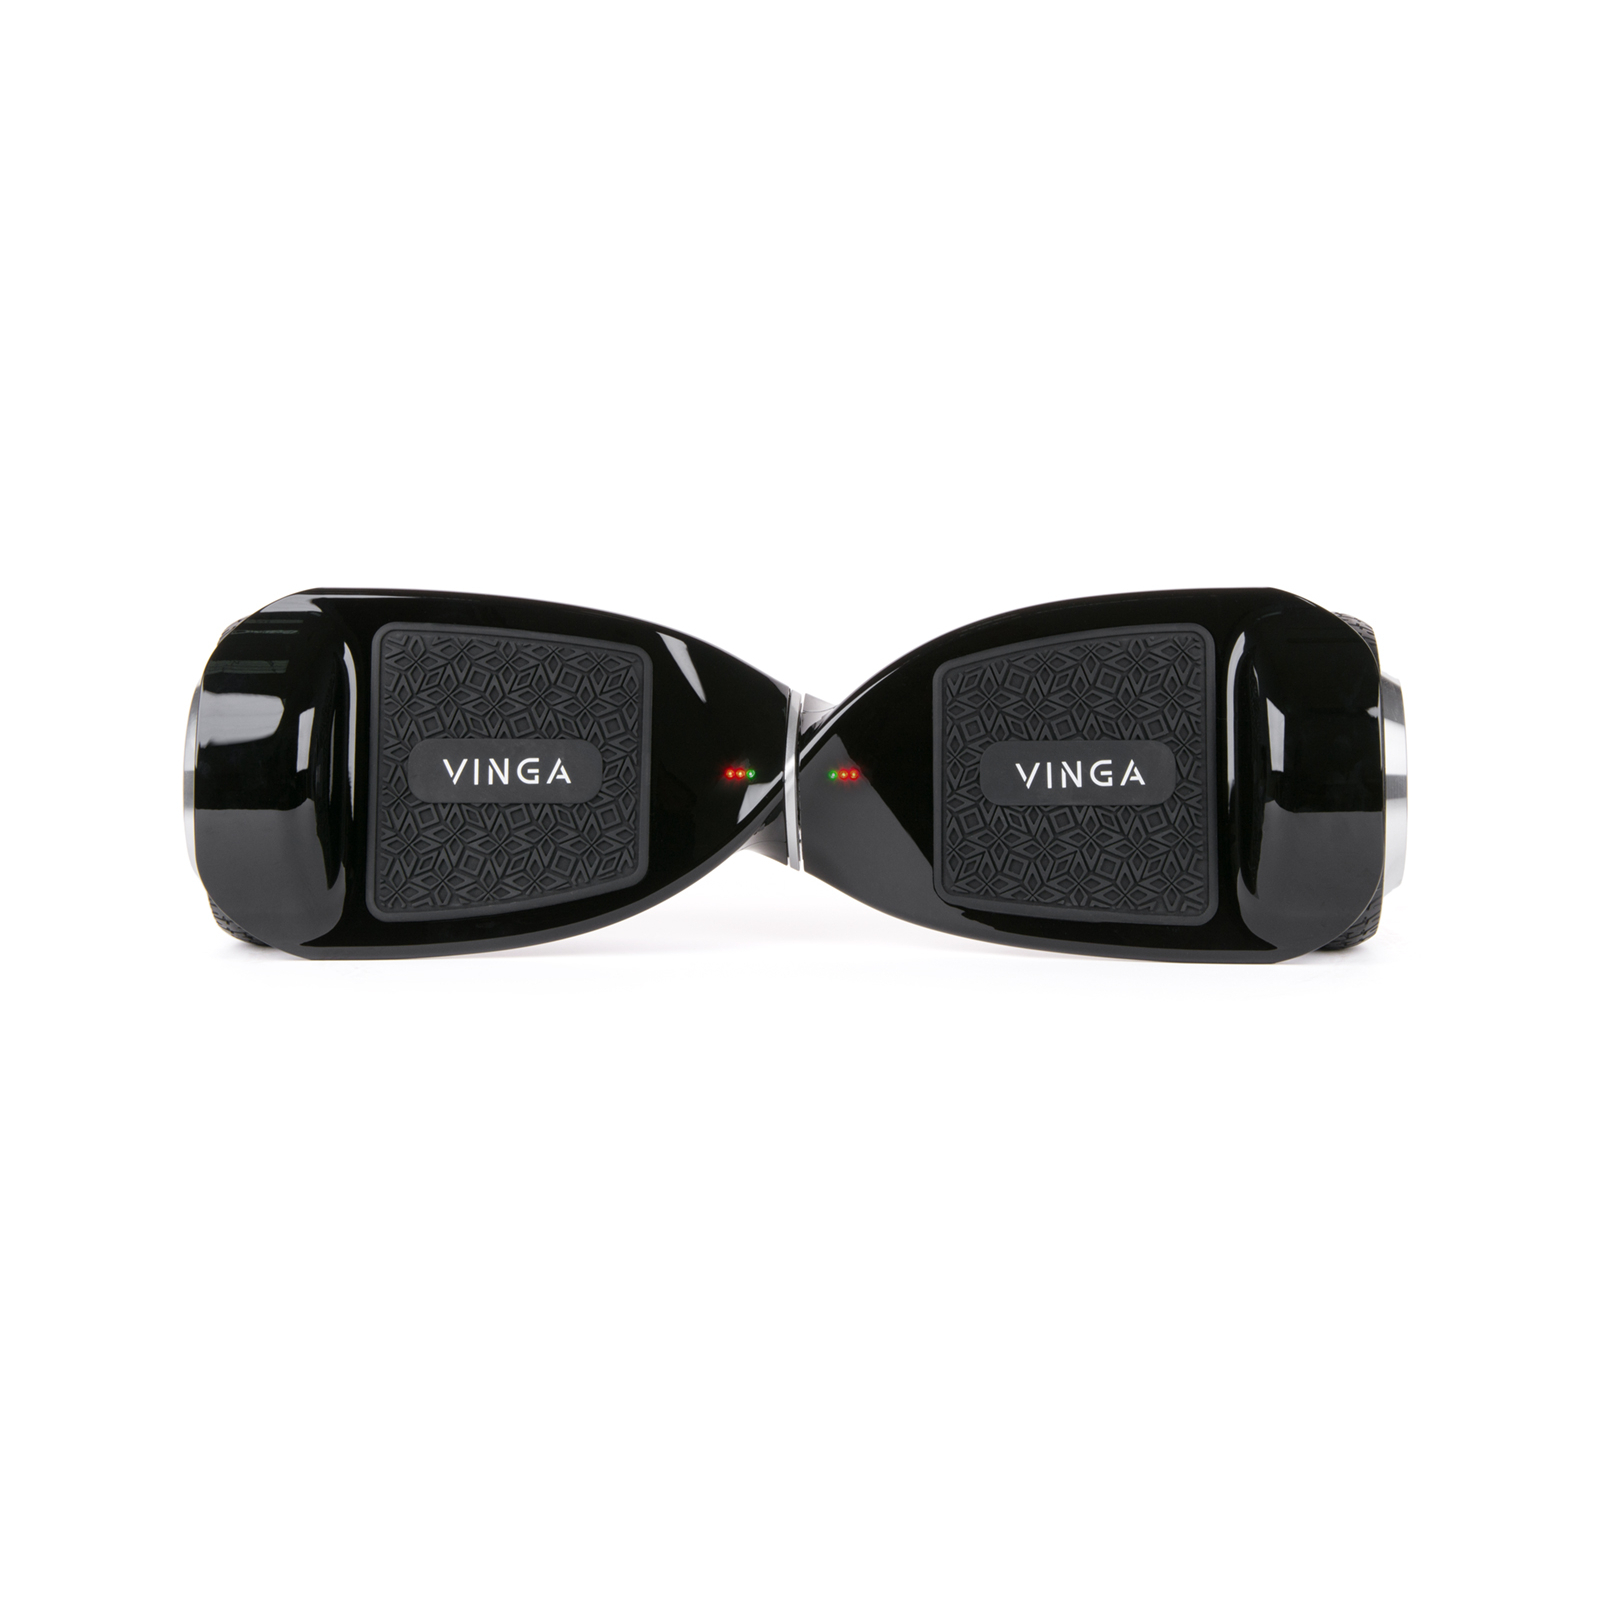 Гироборд Vinga VX-065 Black изображение 5